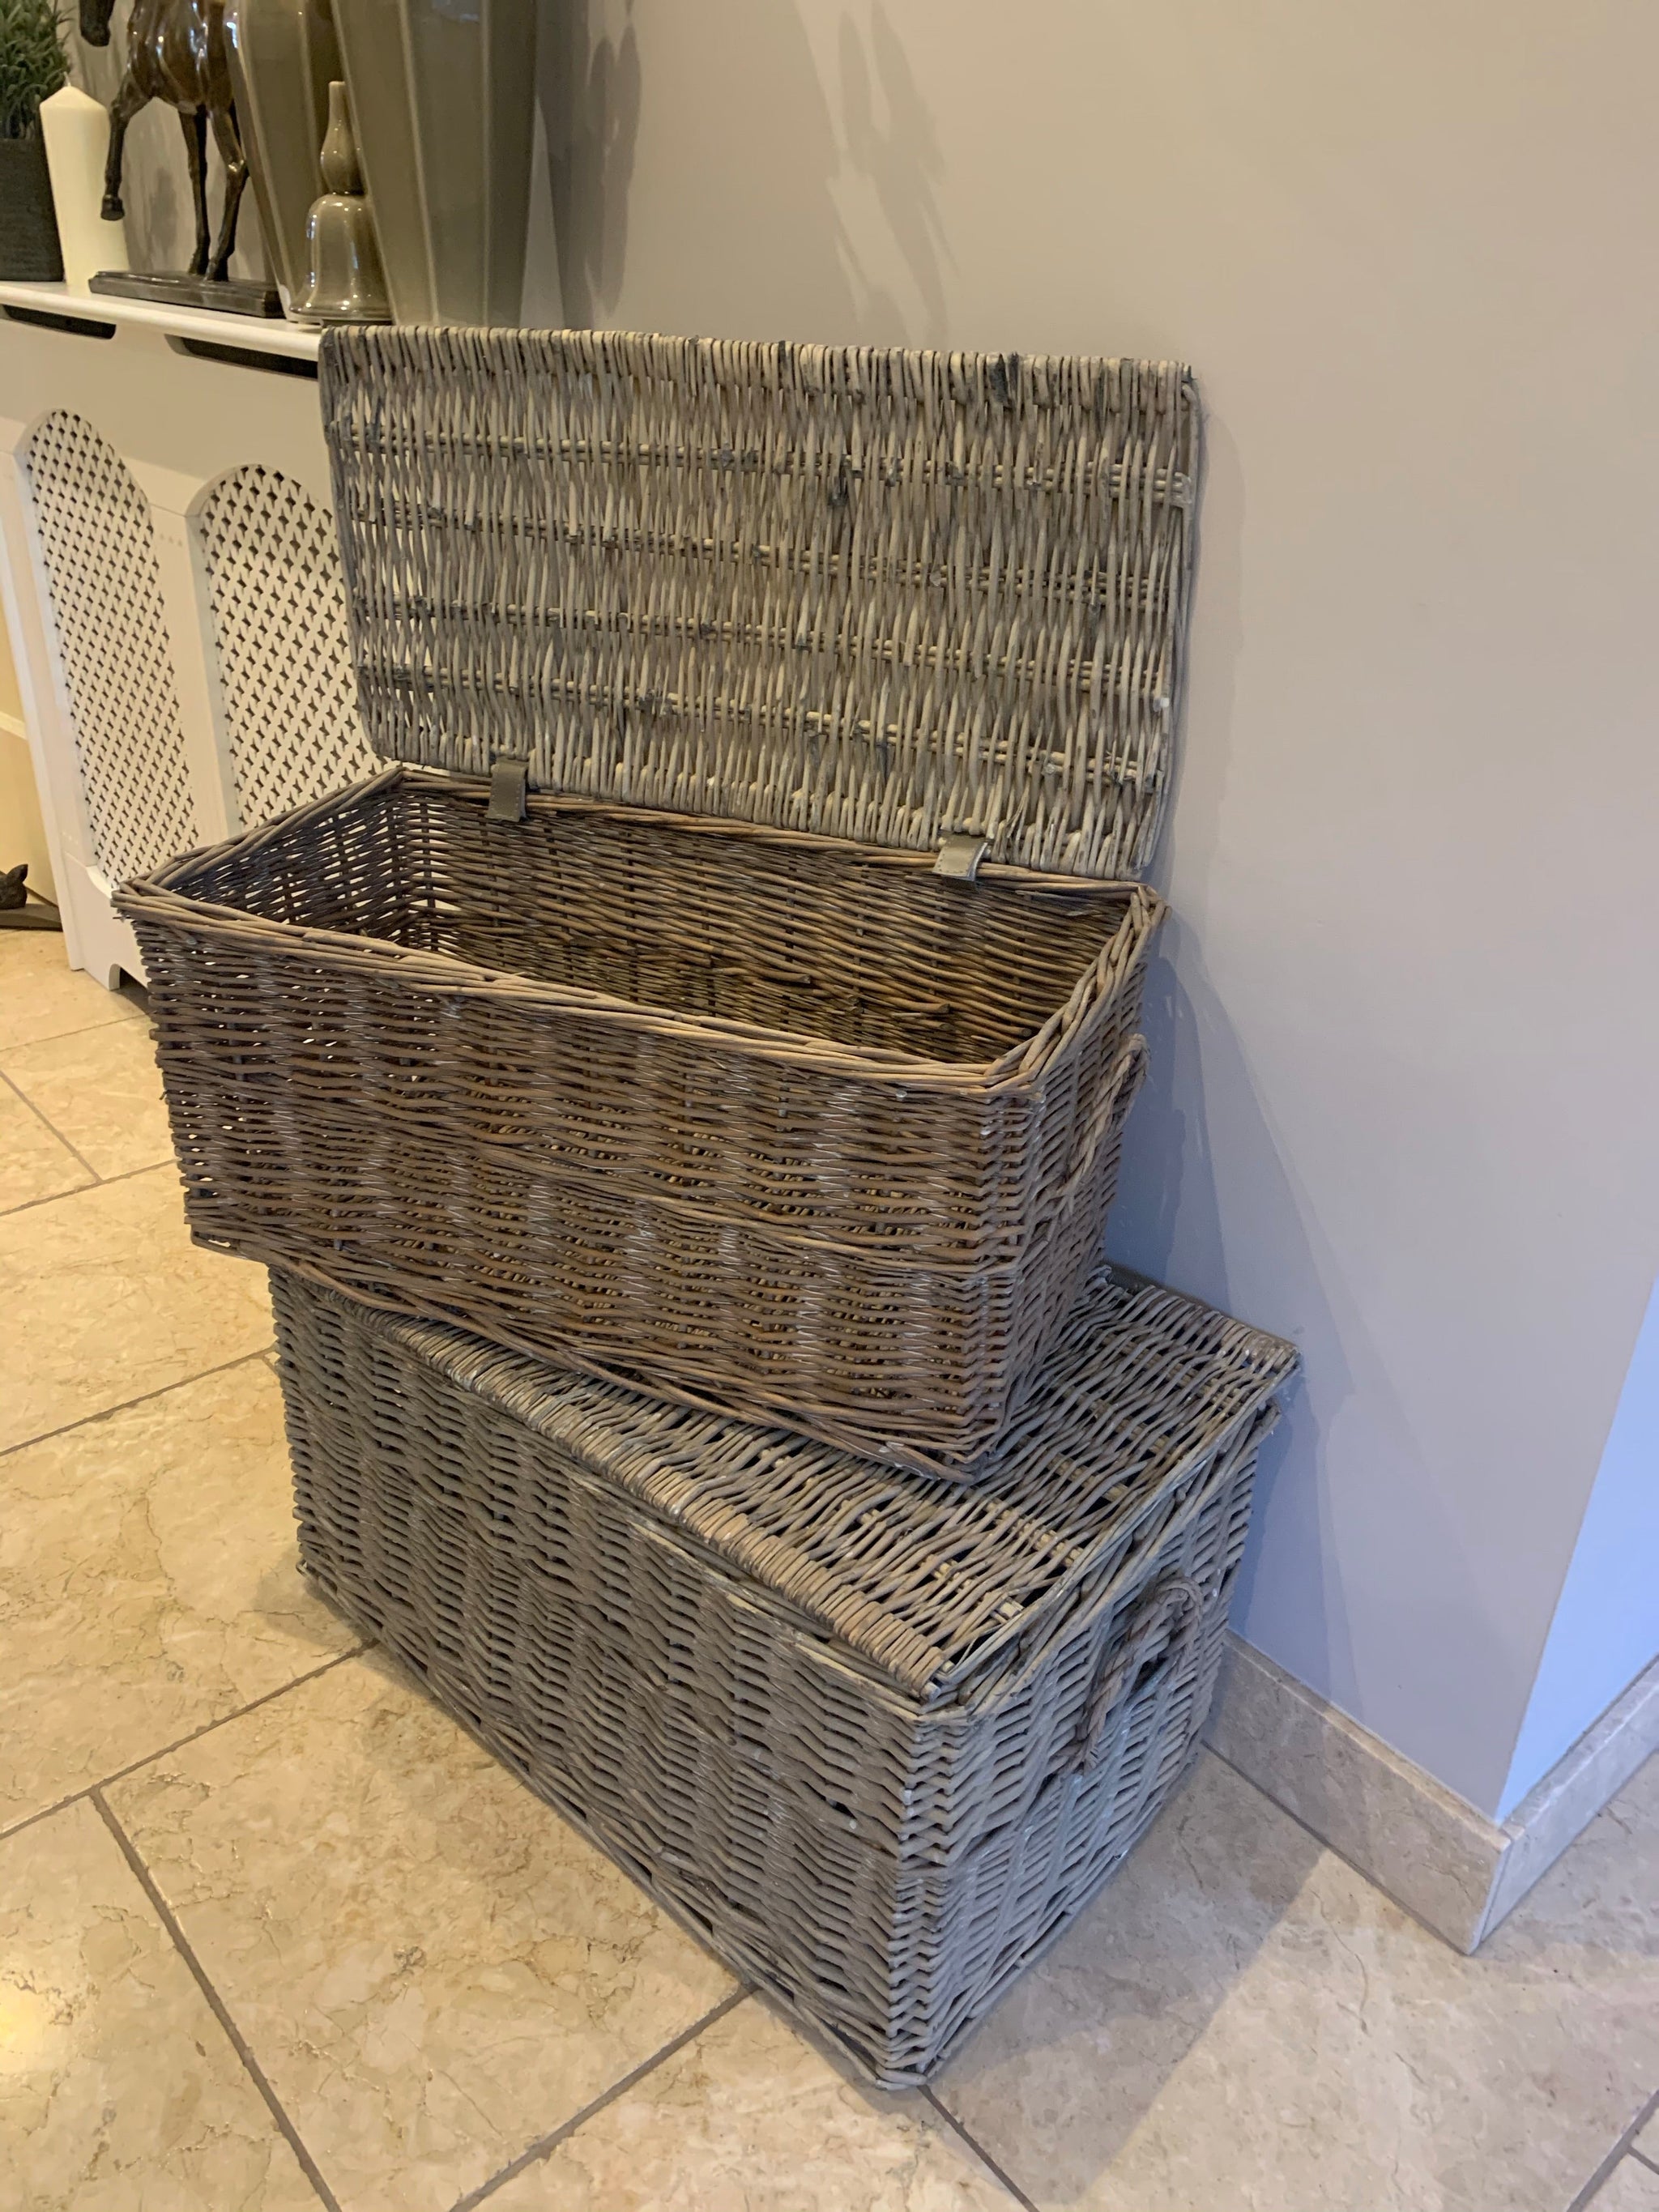 Full wicker baskets - 2 sizes